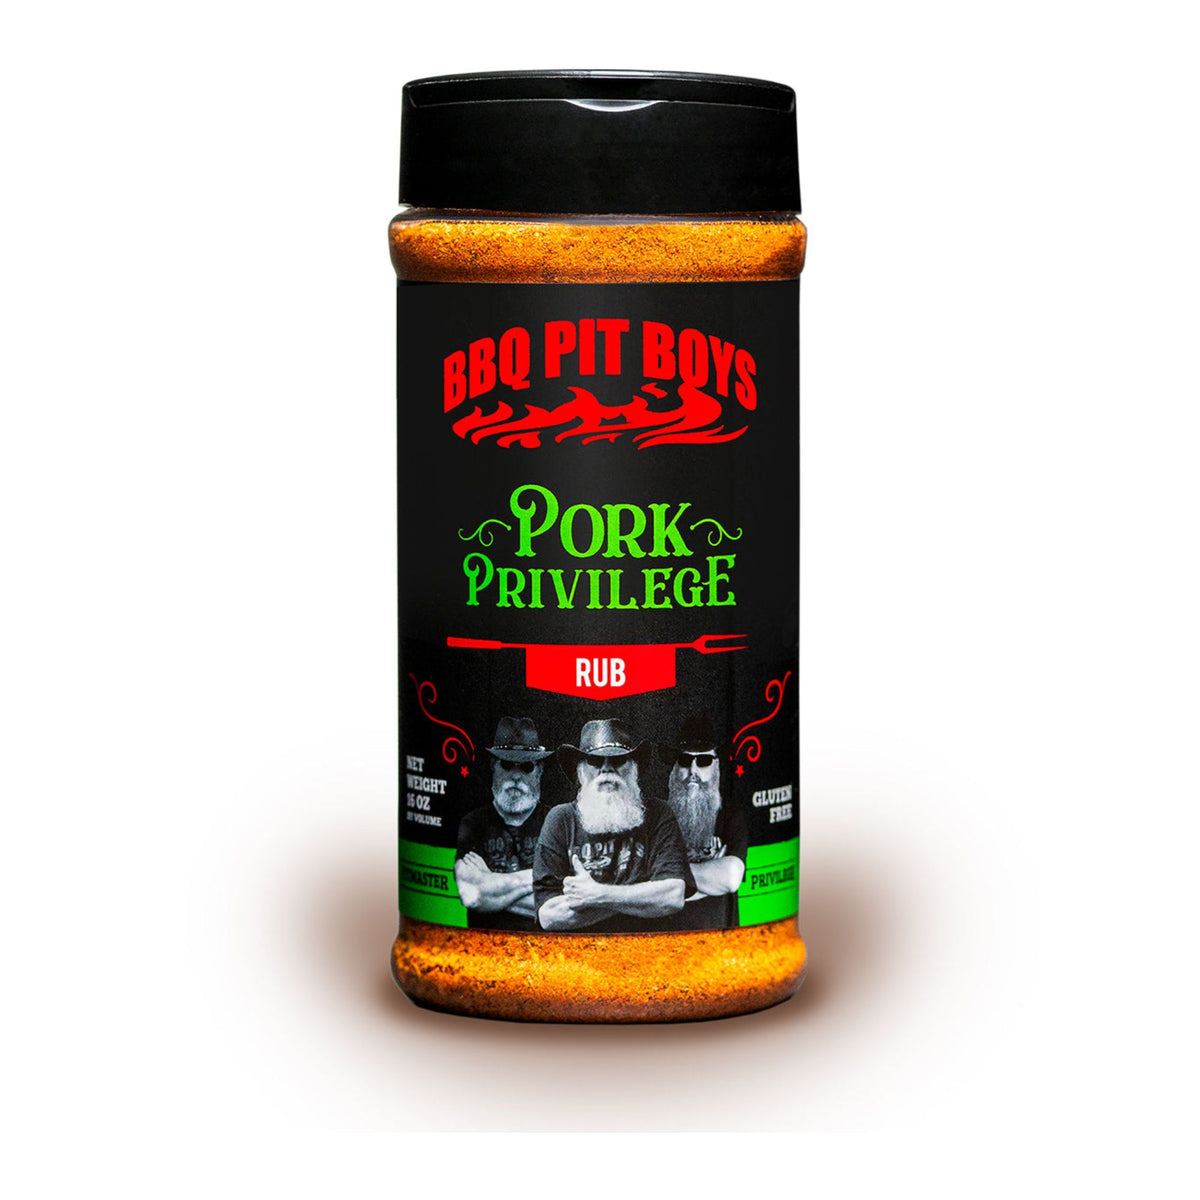 BBQ PIT BOYS | PORK PRIVILEGE - Adatto a qualsiasi taglio di maiale!